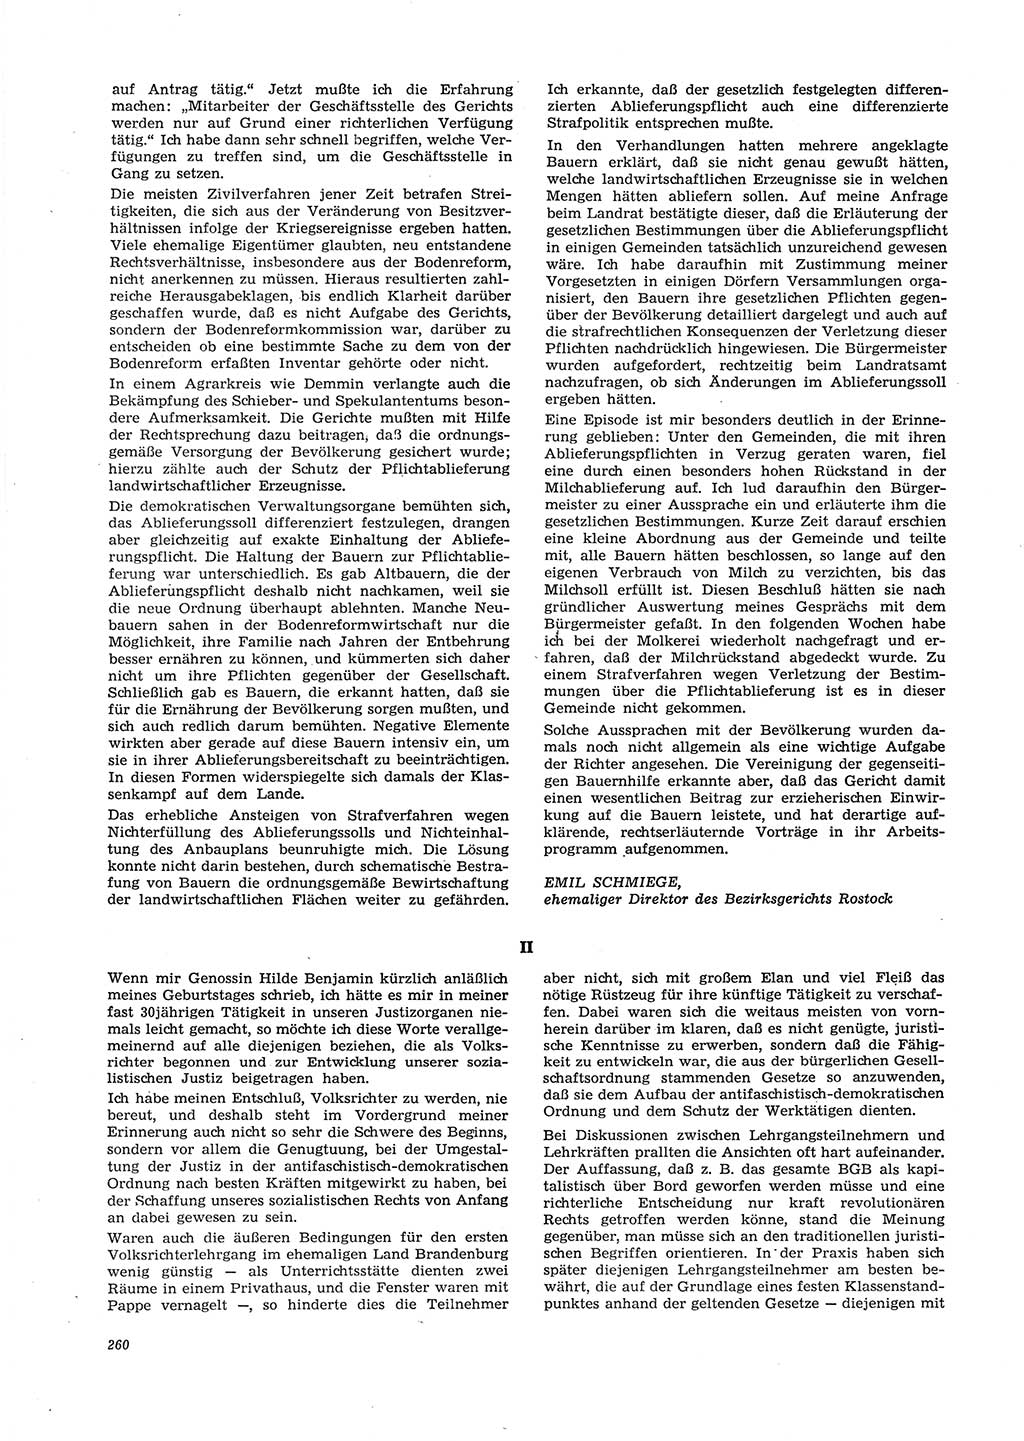 Neue Justiz (NJ), Zeitschrift für Recht und Rechtswissenschaft [Deutsche Demokratische Republik (DDR)], 29. Jahrgang 1975, Seite 260 (NJ DDR 1975, S. 260)